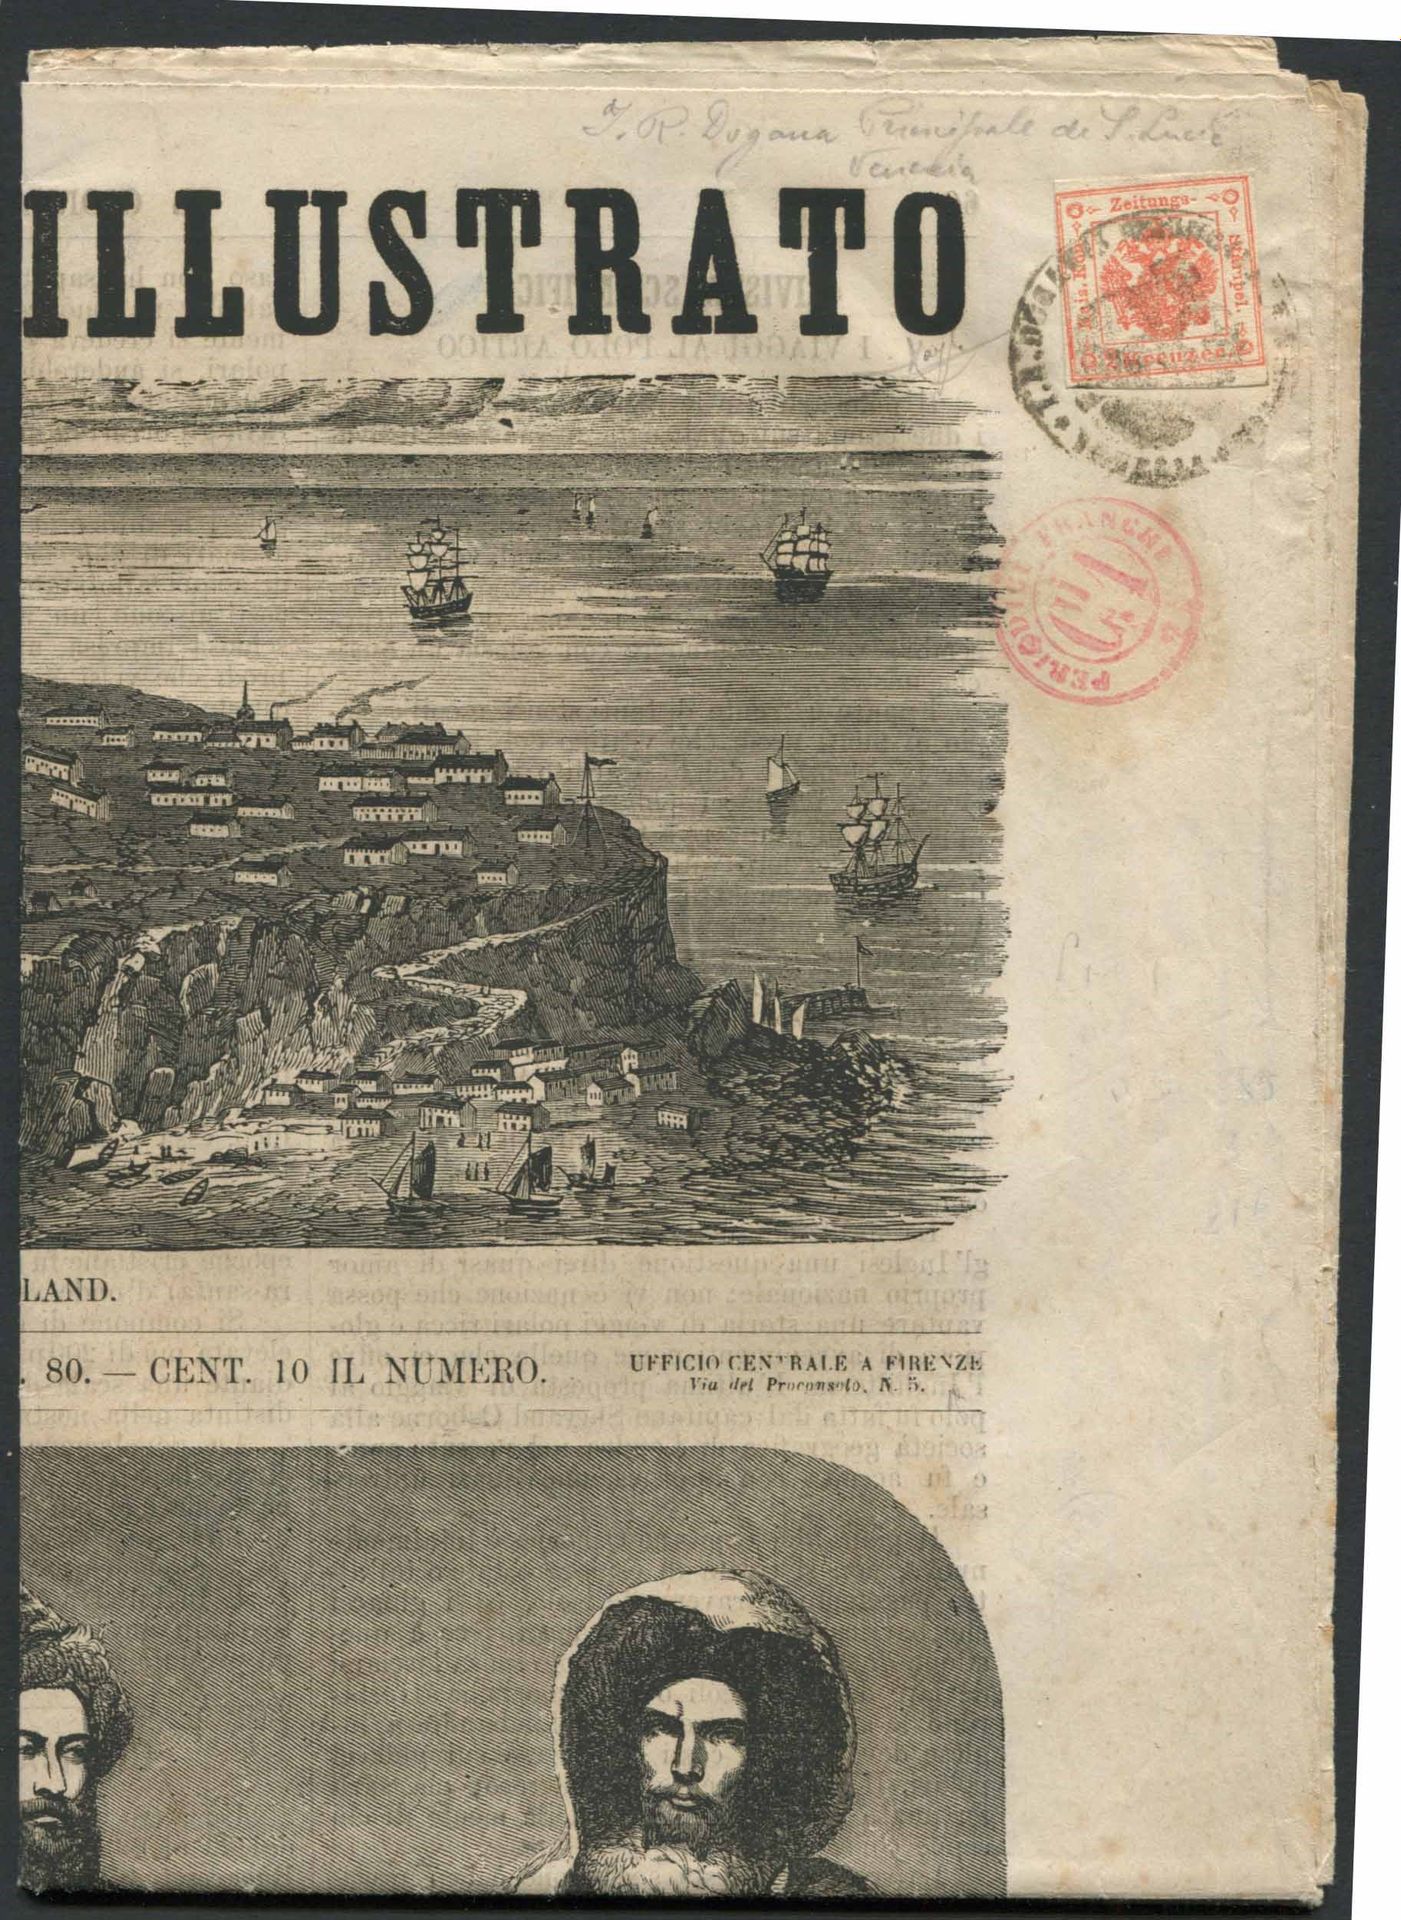 Lombardo Veneto. Giornale completo “Il Giornale Illustrato” del 10 marzo 1866., &hellip;